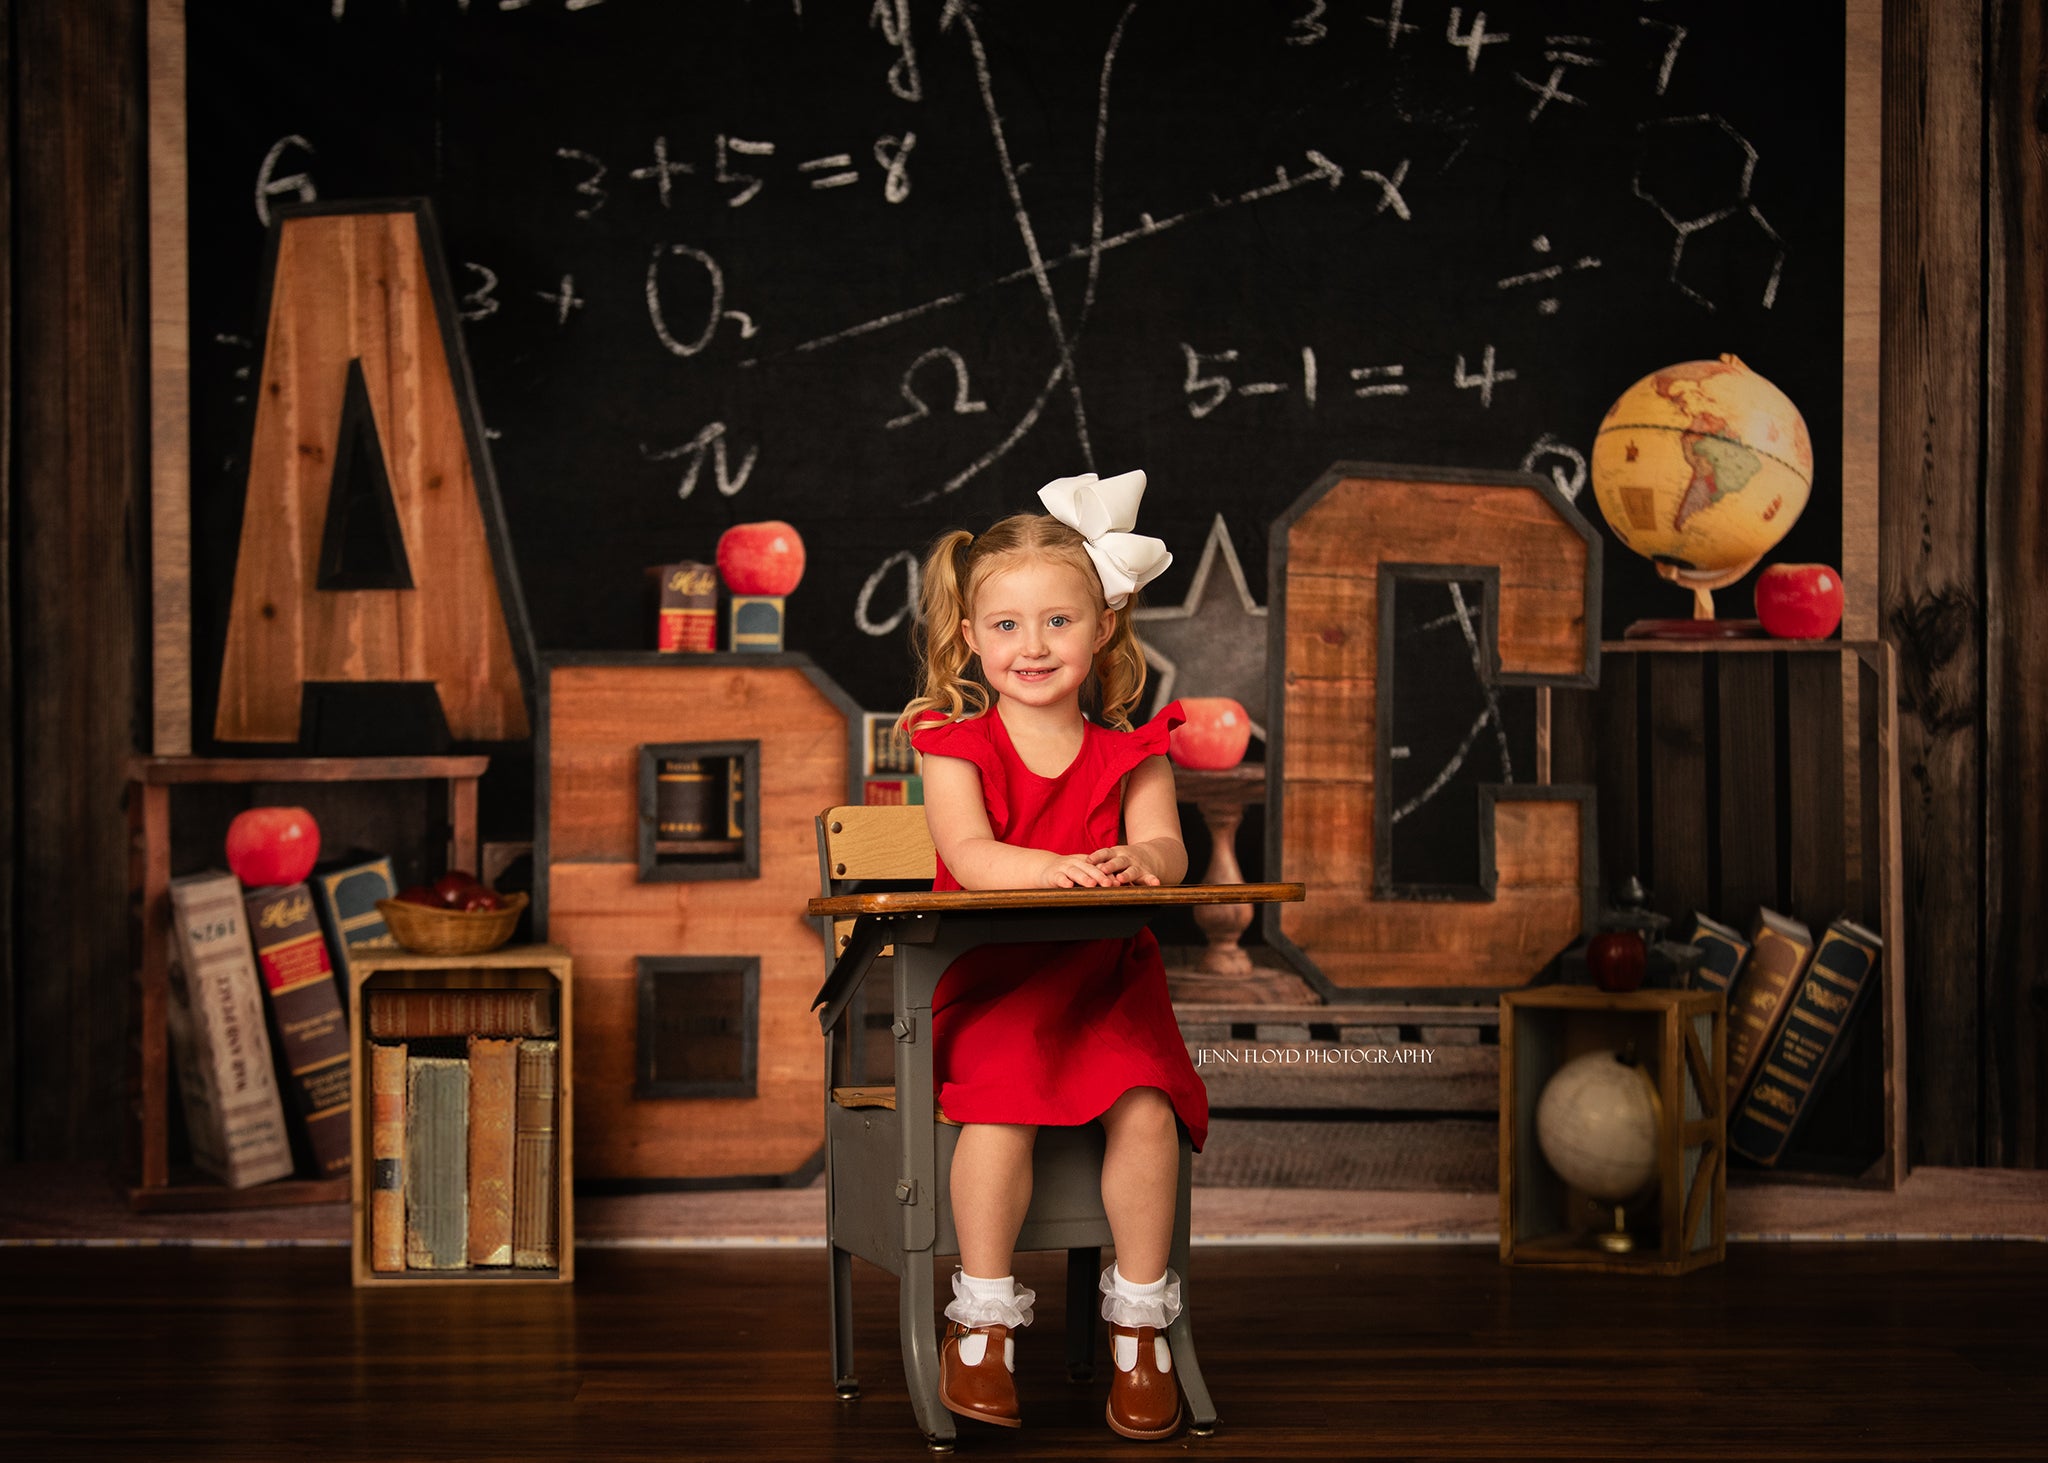 Kate Back to School Blackboard Children Backdrop Designed by Emetselch